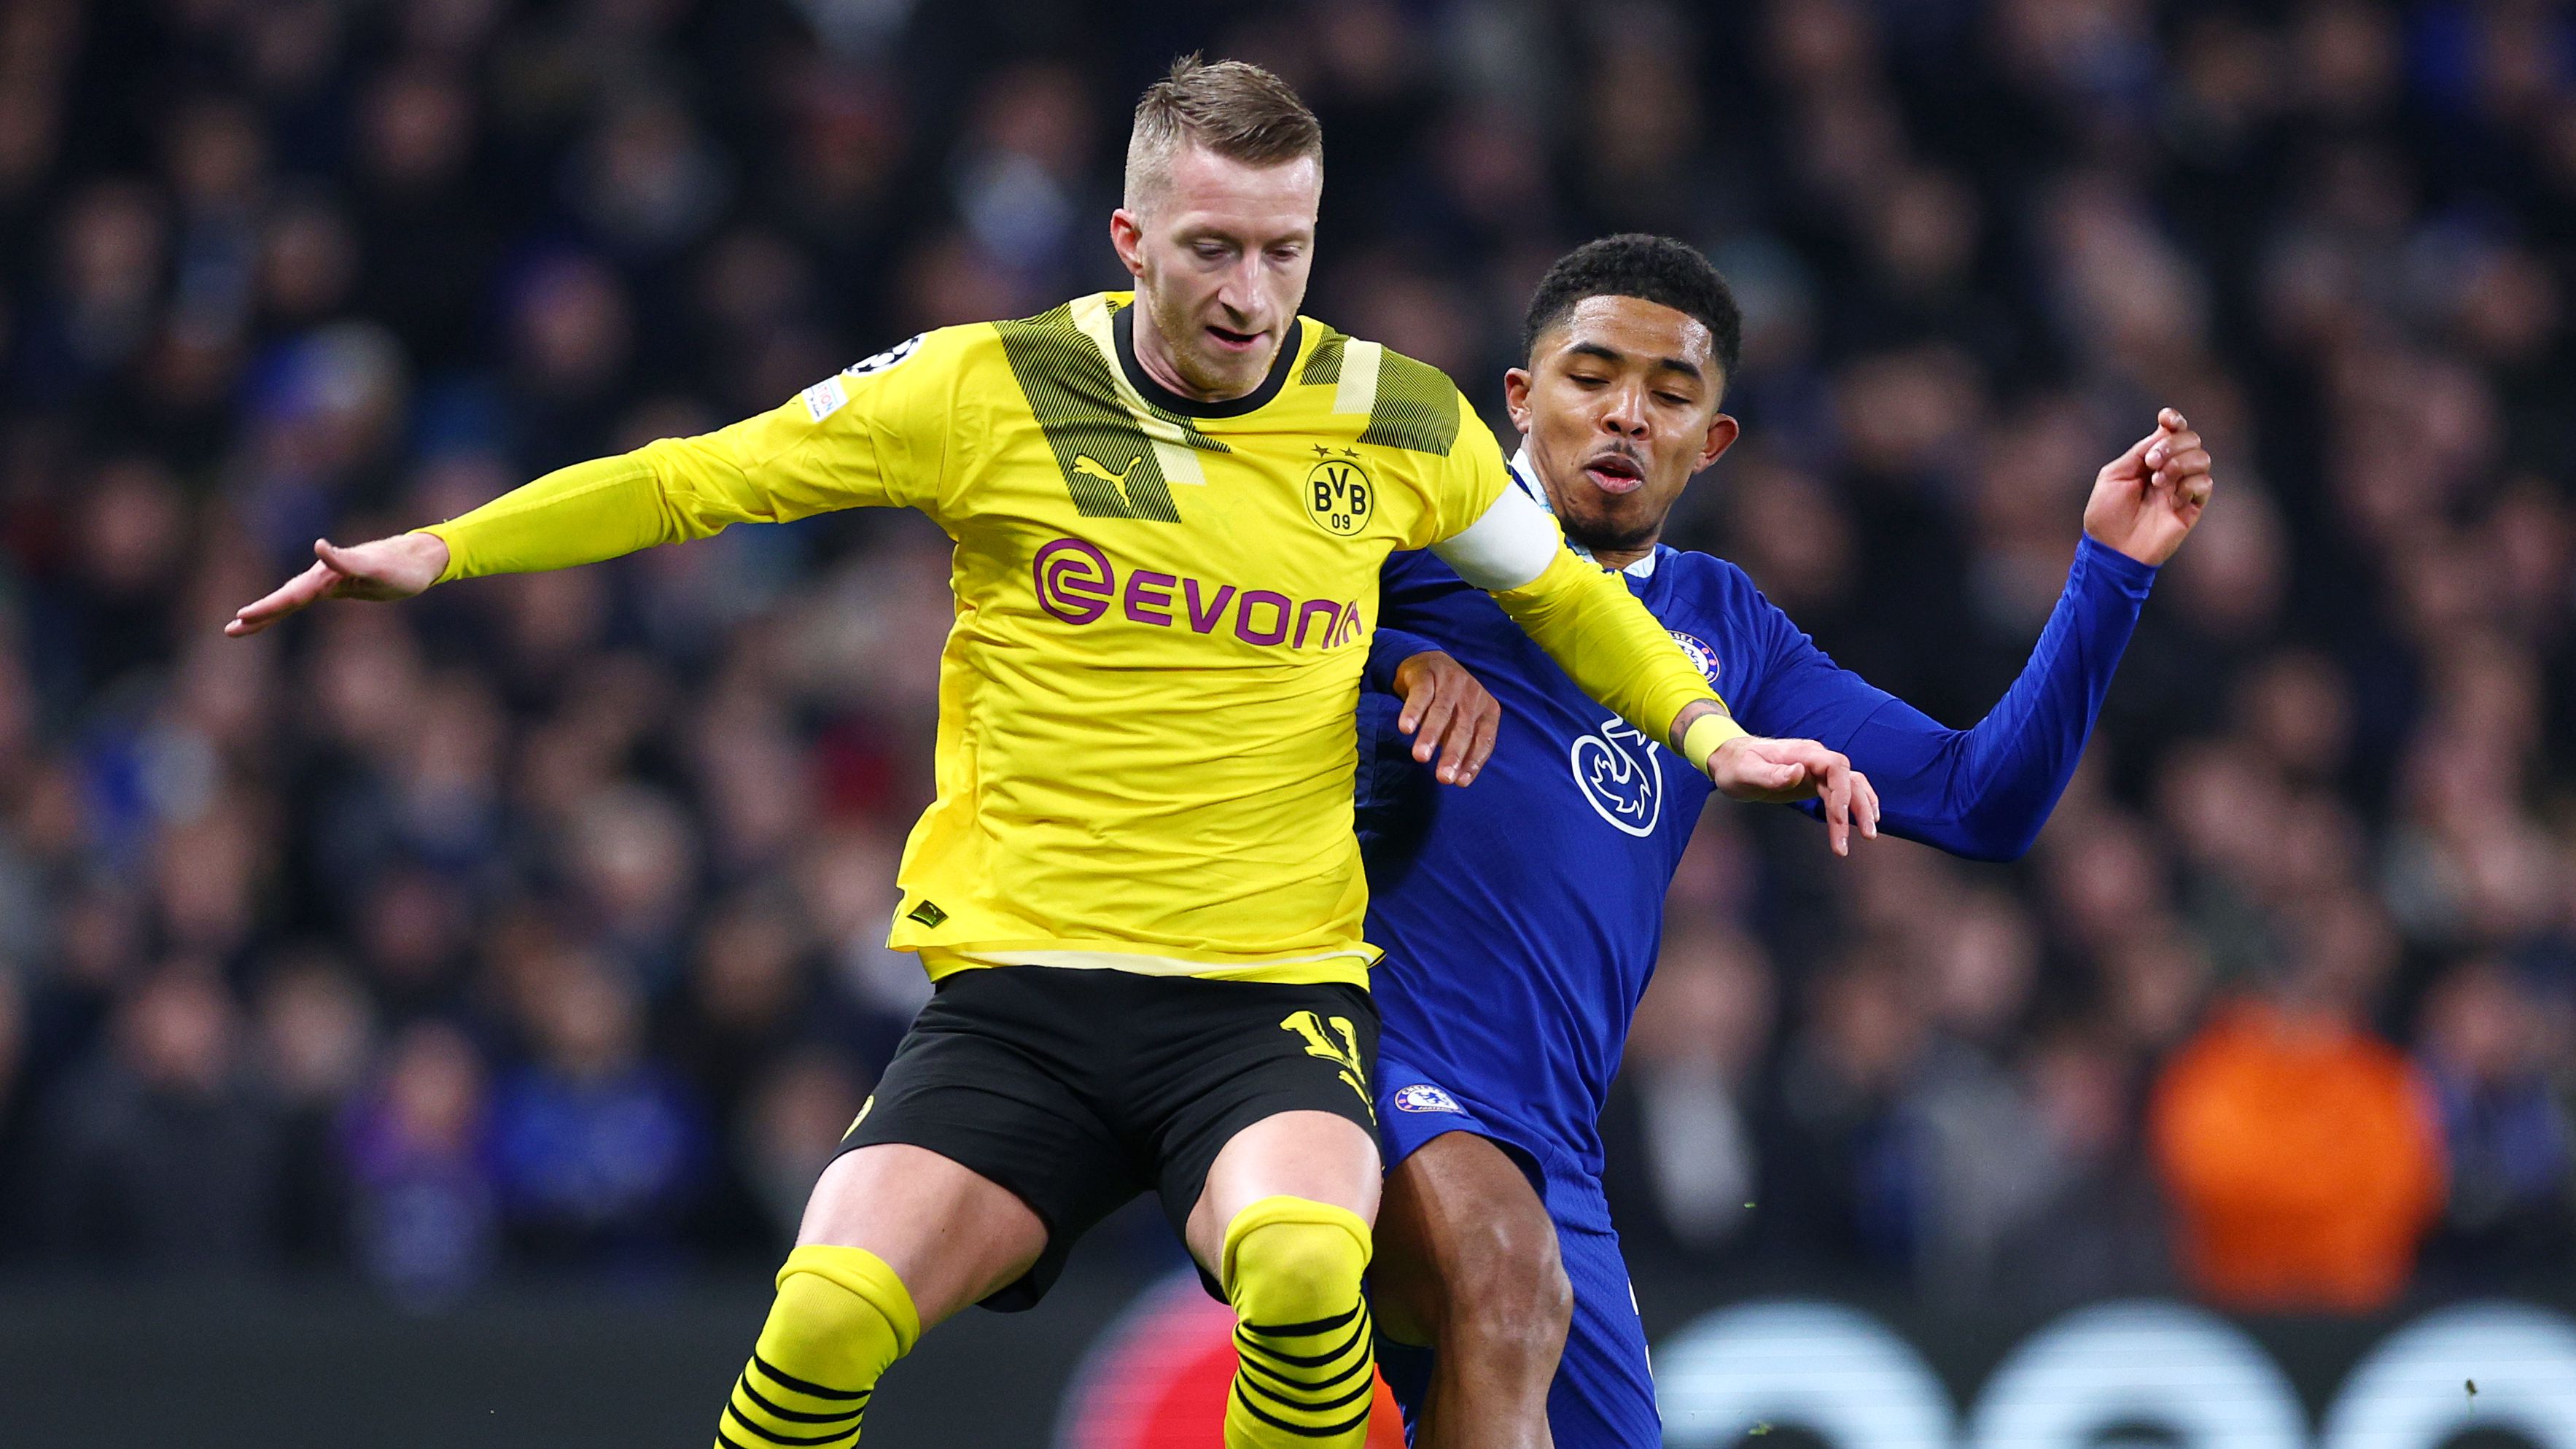 Jogo muito disputado entre Chelsea e Borussia Dortmund (Crédito: Getty Images)